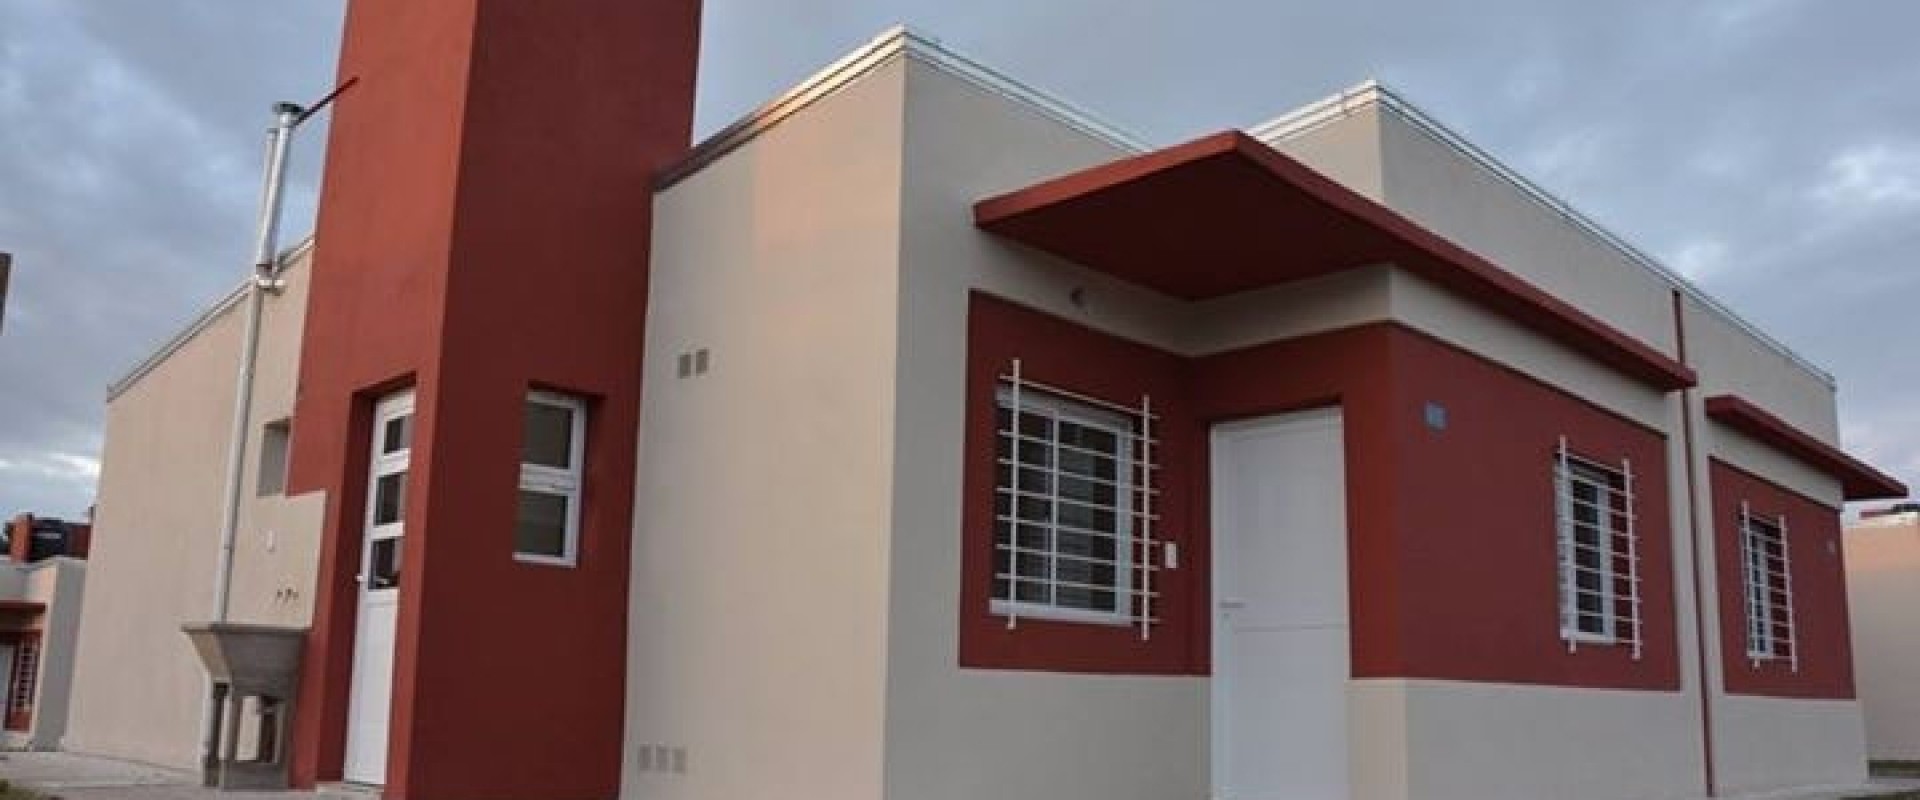 El IAPV expondrá el padrón de postulantes de 56 viviendas que construye en Gualeguaychú